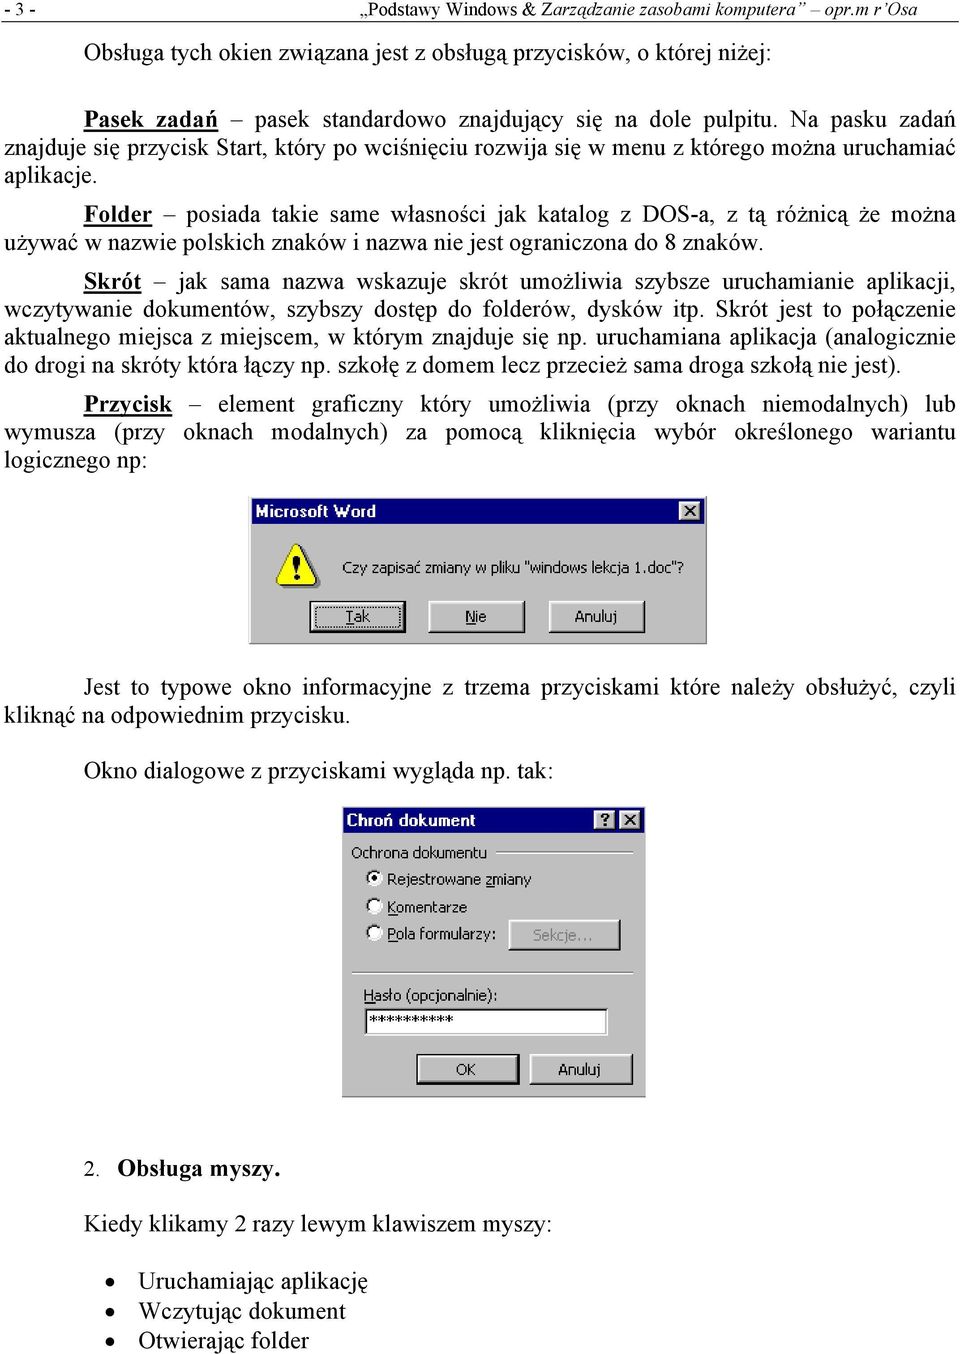 Folder posiada takie same własności jak katalog z DOS-a, z tą różnicą że można używać w nazwie polskich znaków i nazwa nie jest ograniczona do 8 znaków.